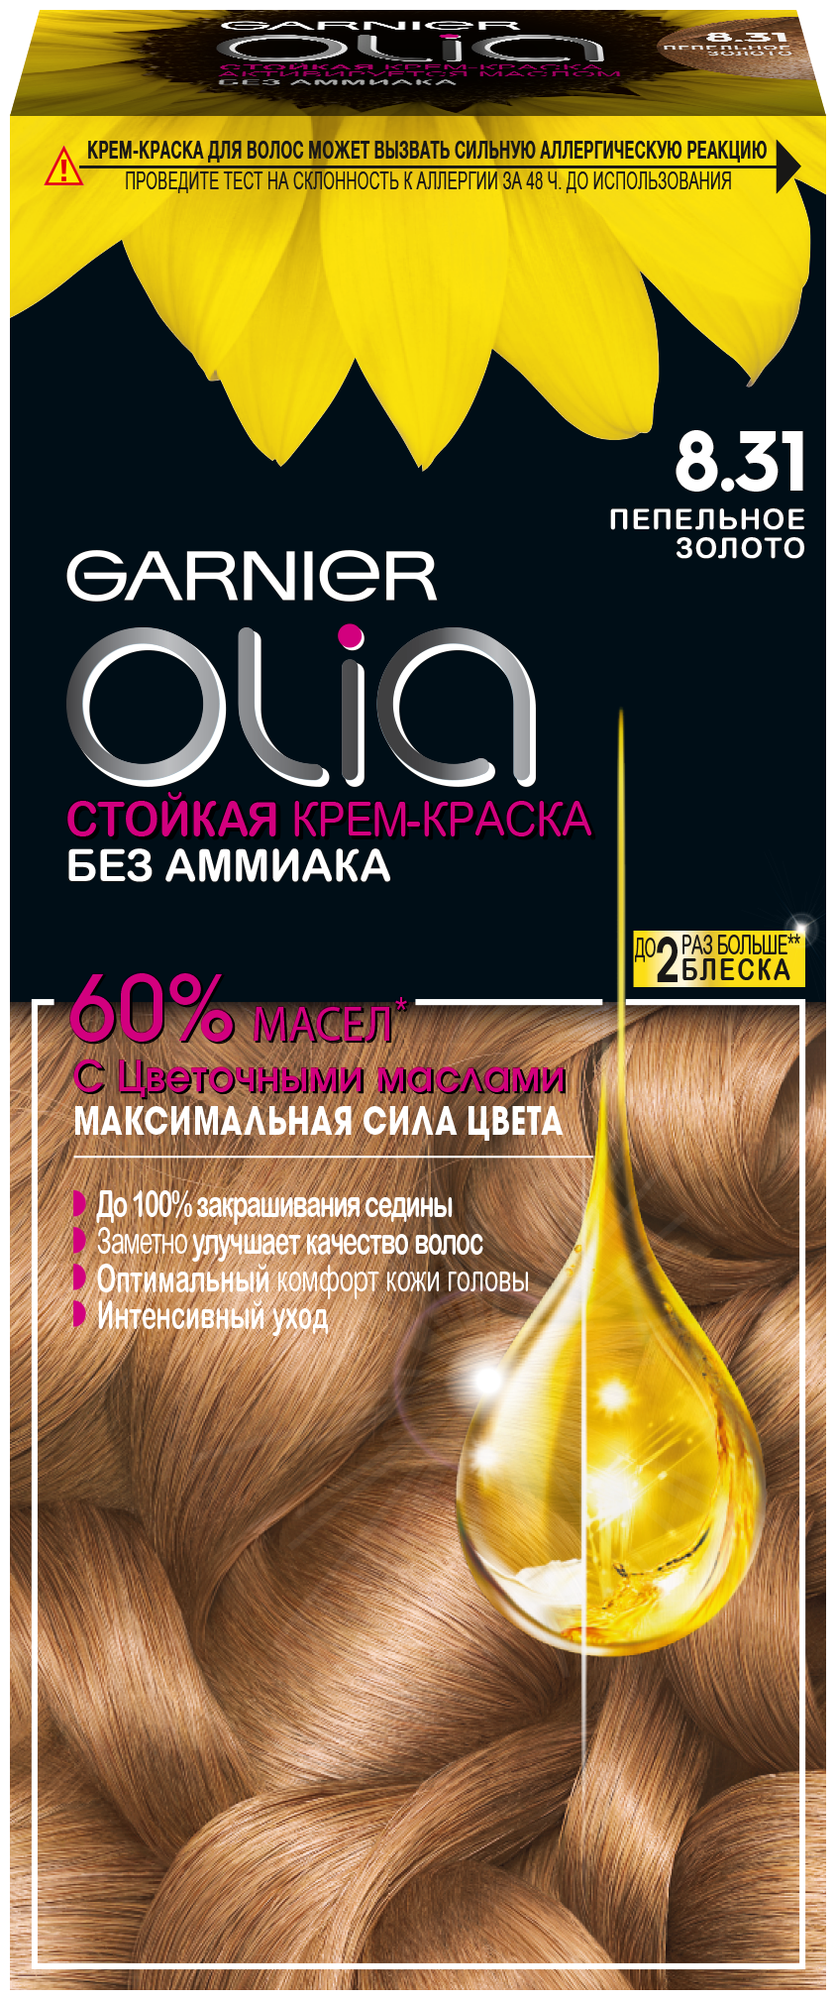 GARNIER Olia стойкая крем-краска для волос, 8.31 пепельное золото, 112 мл — купить в интернет-магазине по низкой цене на Яндекс Маркете